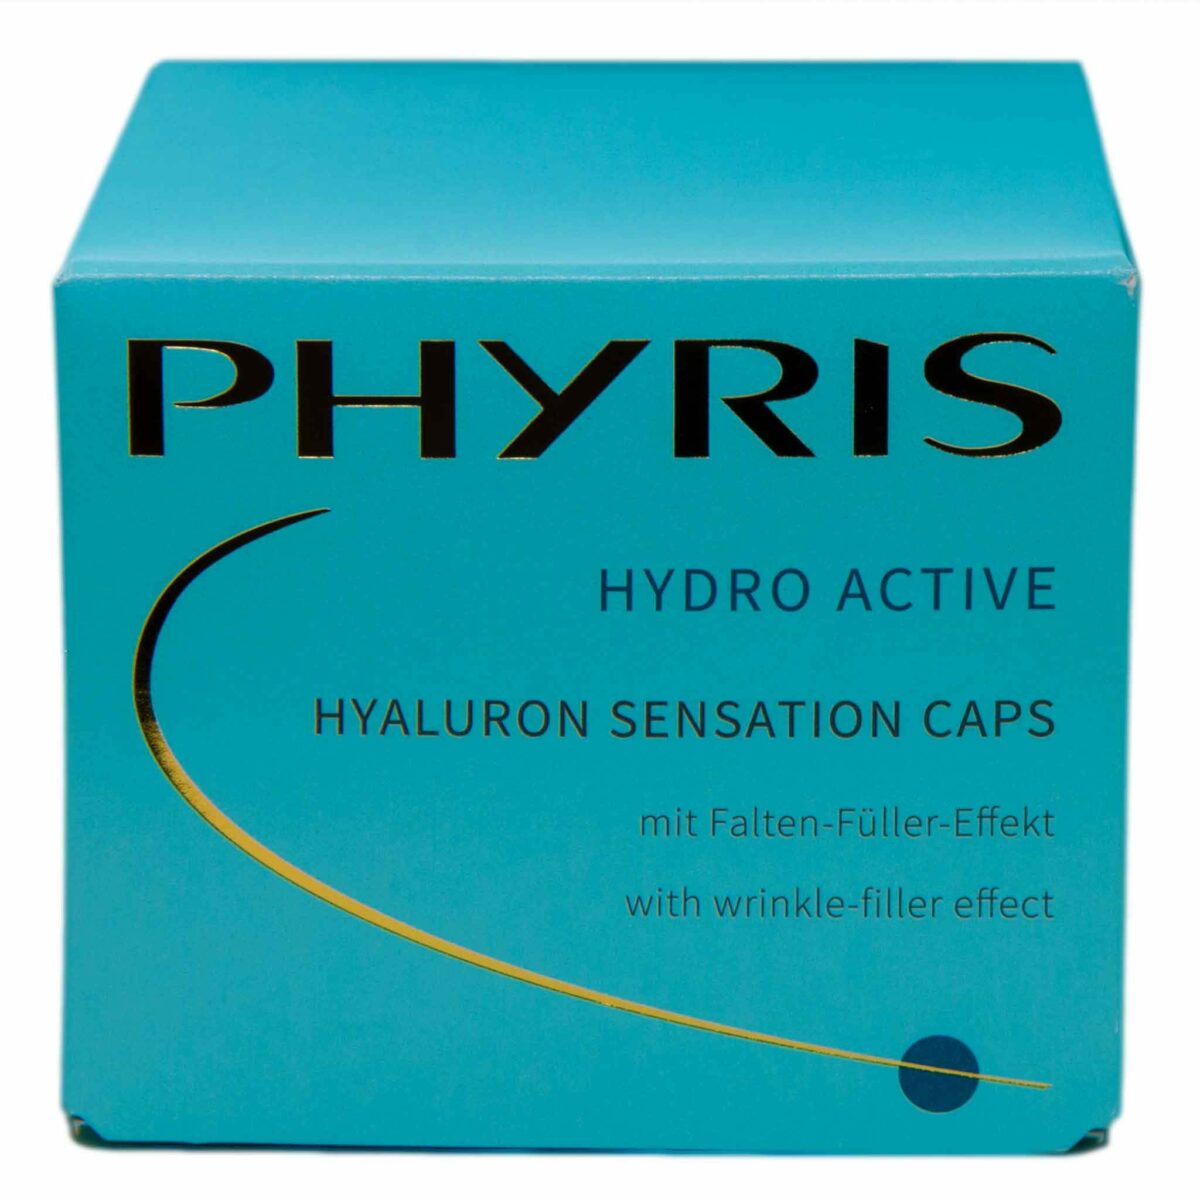 PHYRIS - Hyaluron Sensation Caps